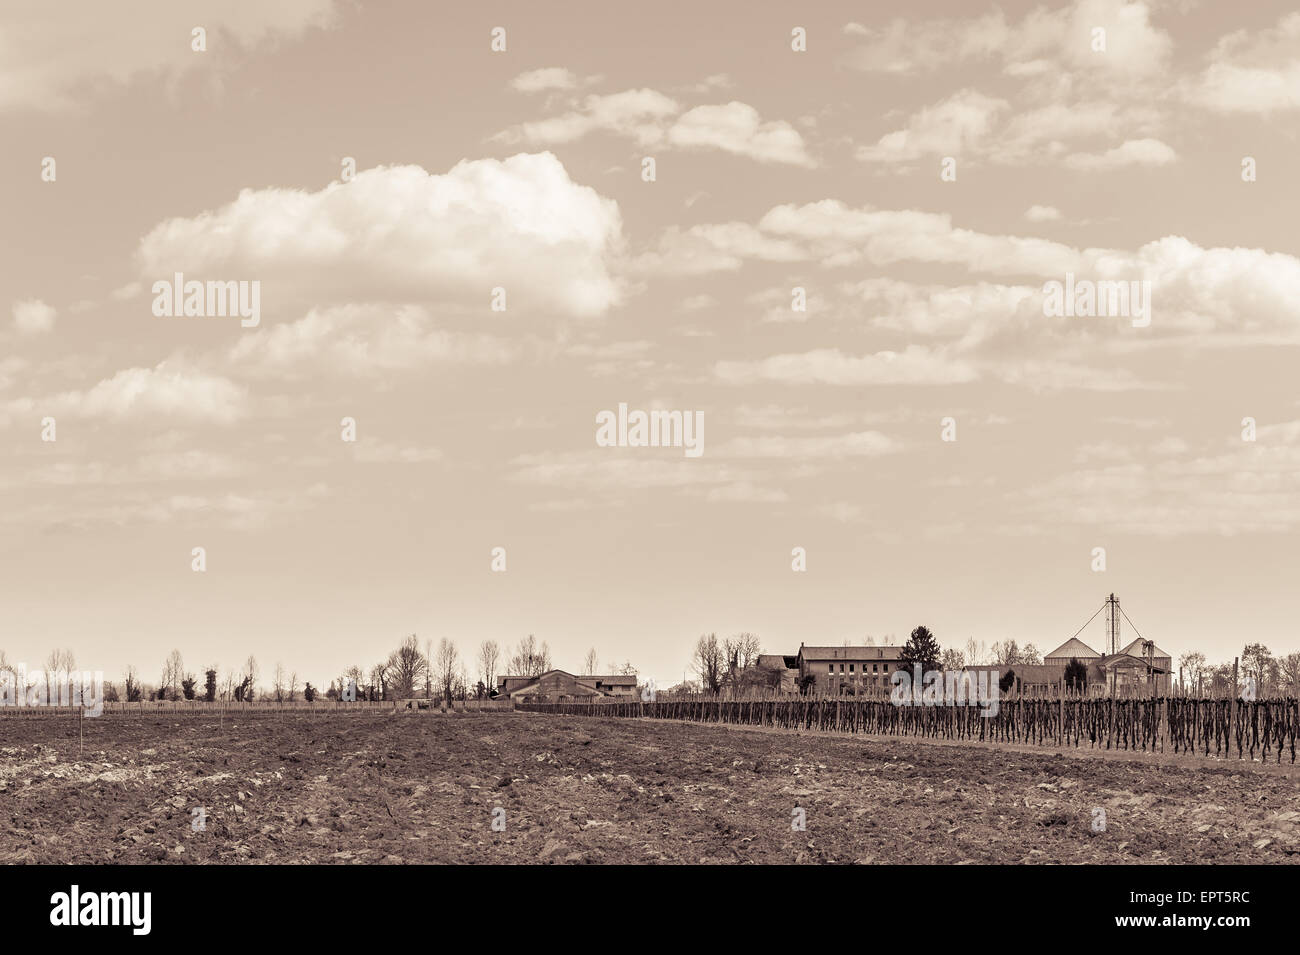 Effetto vintage. Il paesaggio agricolo con vigneto e agriturismo in background. Foto Stock